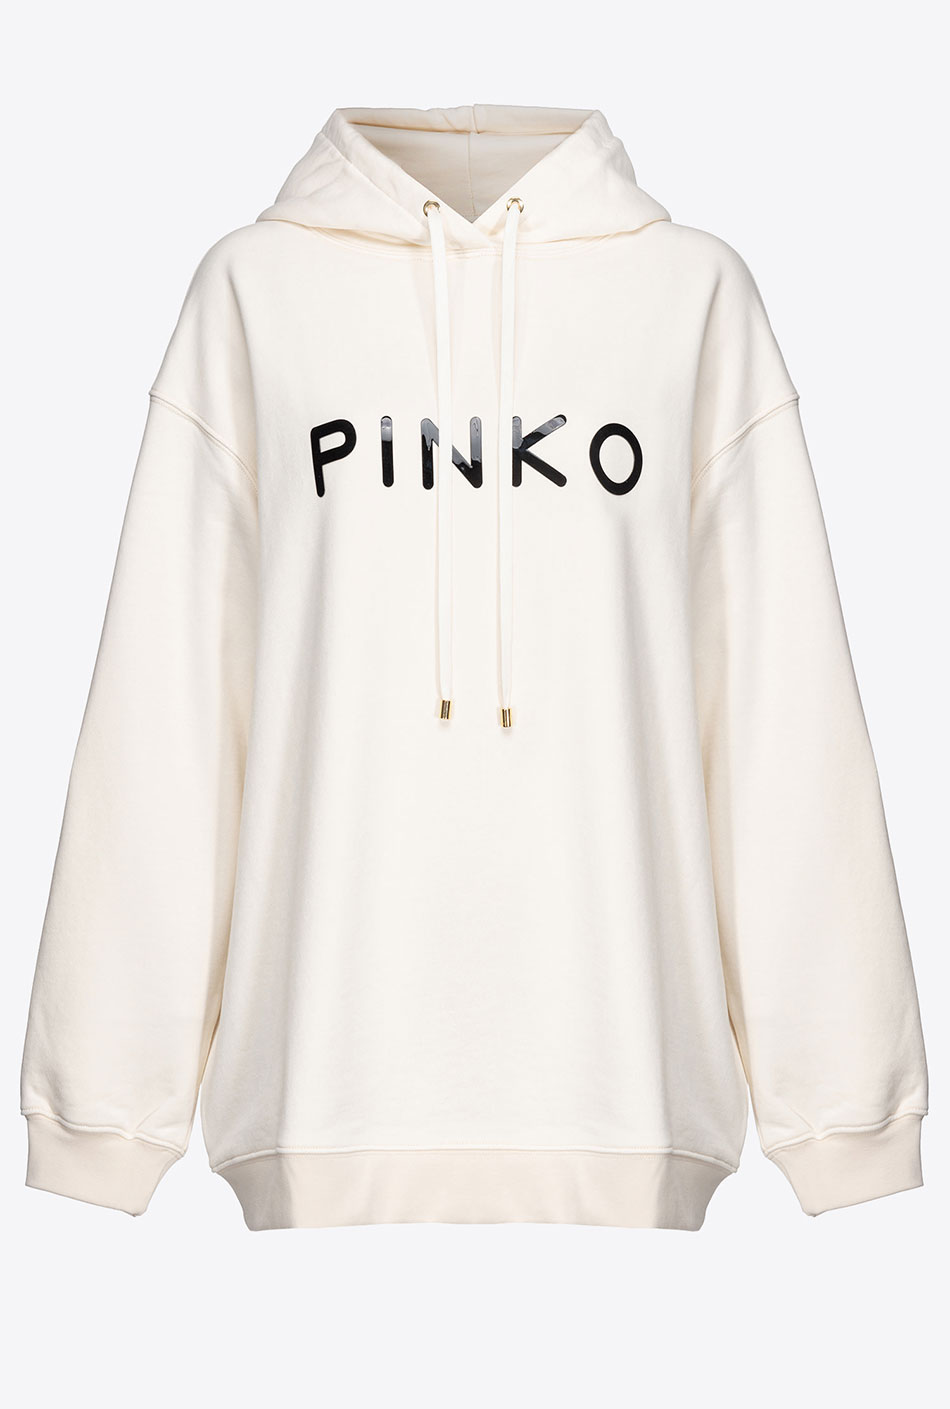 Pinko Print Sweatshirt